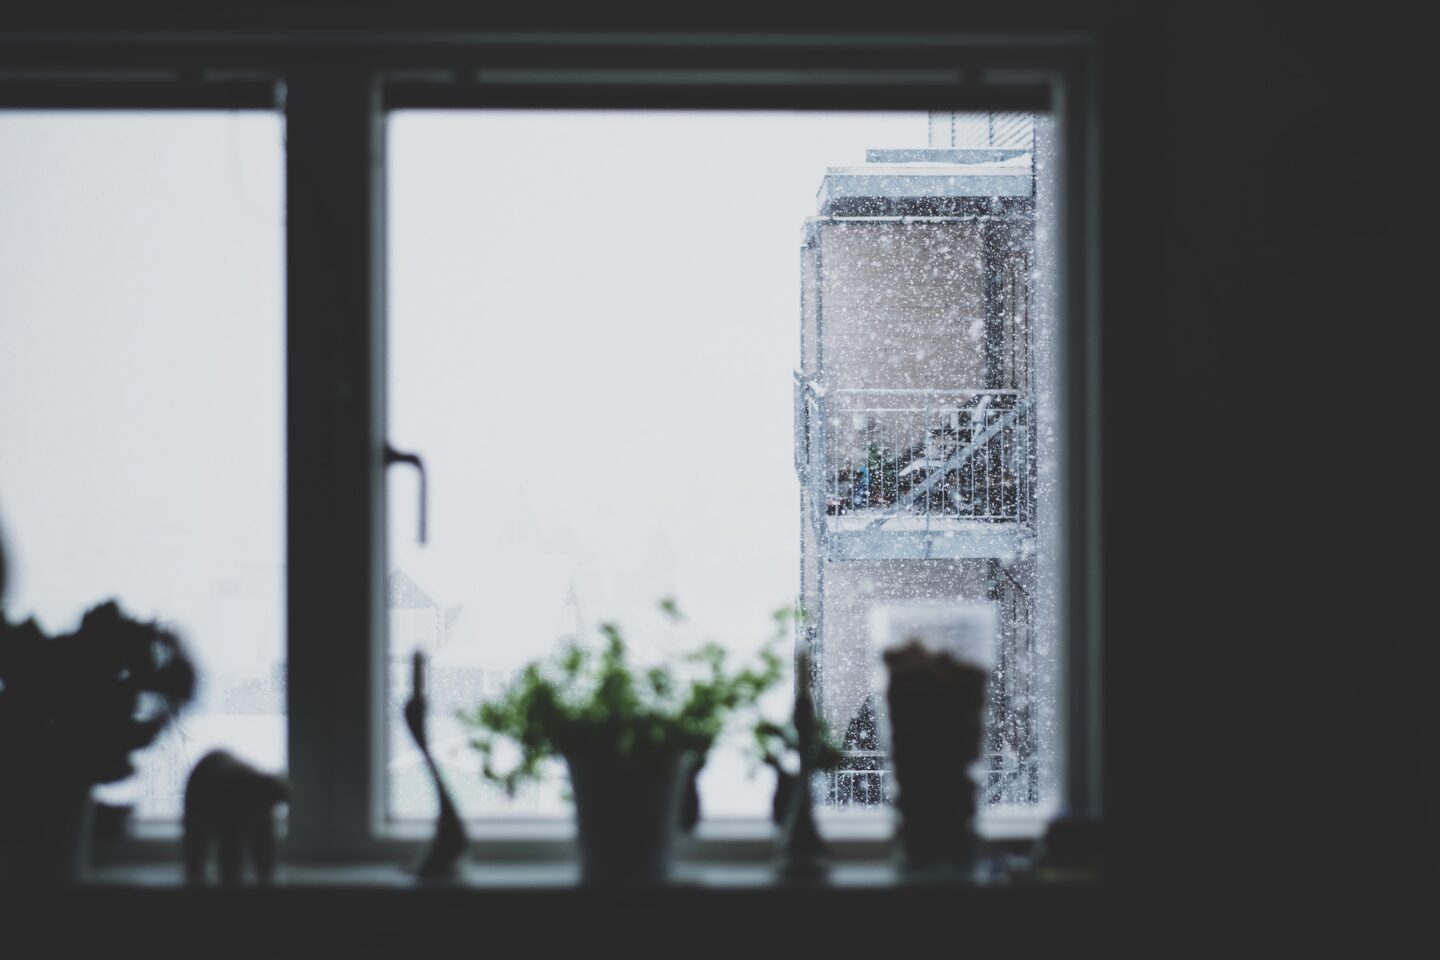 snow falling outside a window